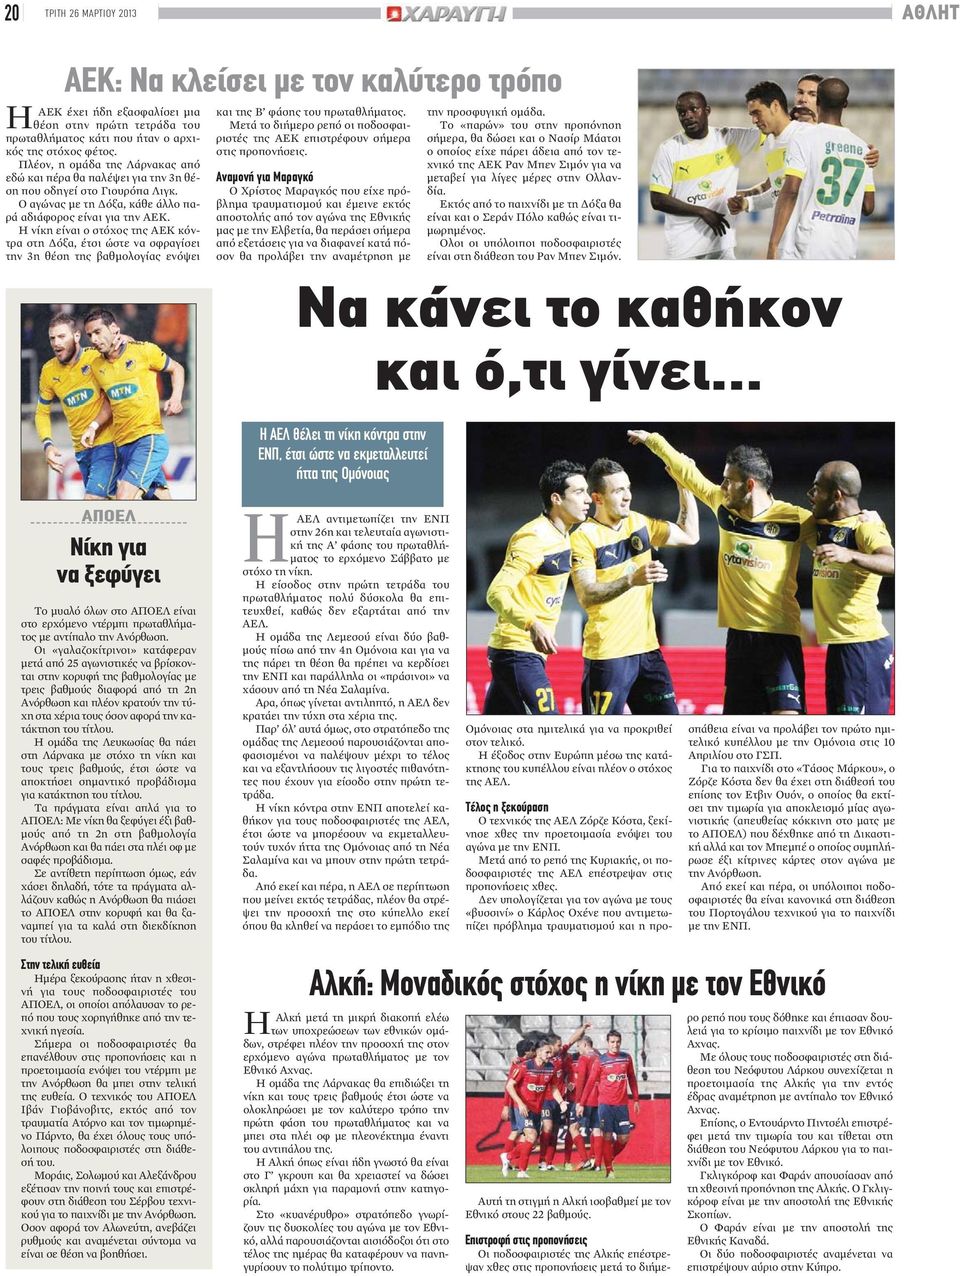 Η νίκη είναι ο στόχος της ΑΕΚ κόντρα στη Δόξα, έτσι ώστε να σφραγίσει την 3η θέση της βαθμολογίας ενόψει και της Β φάσης του πρωταθλήματος.